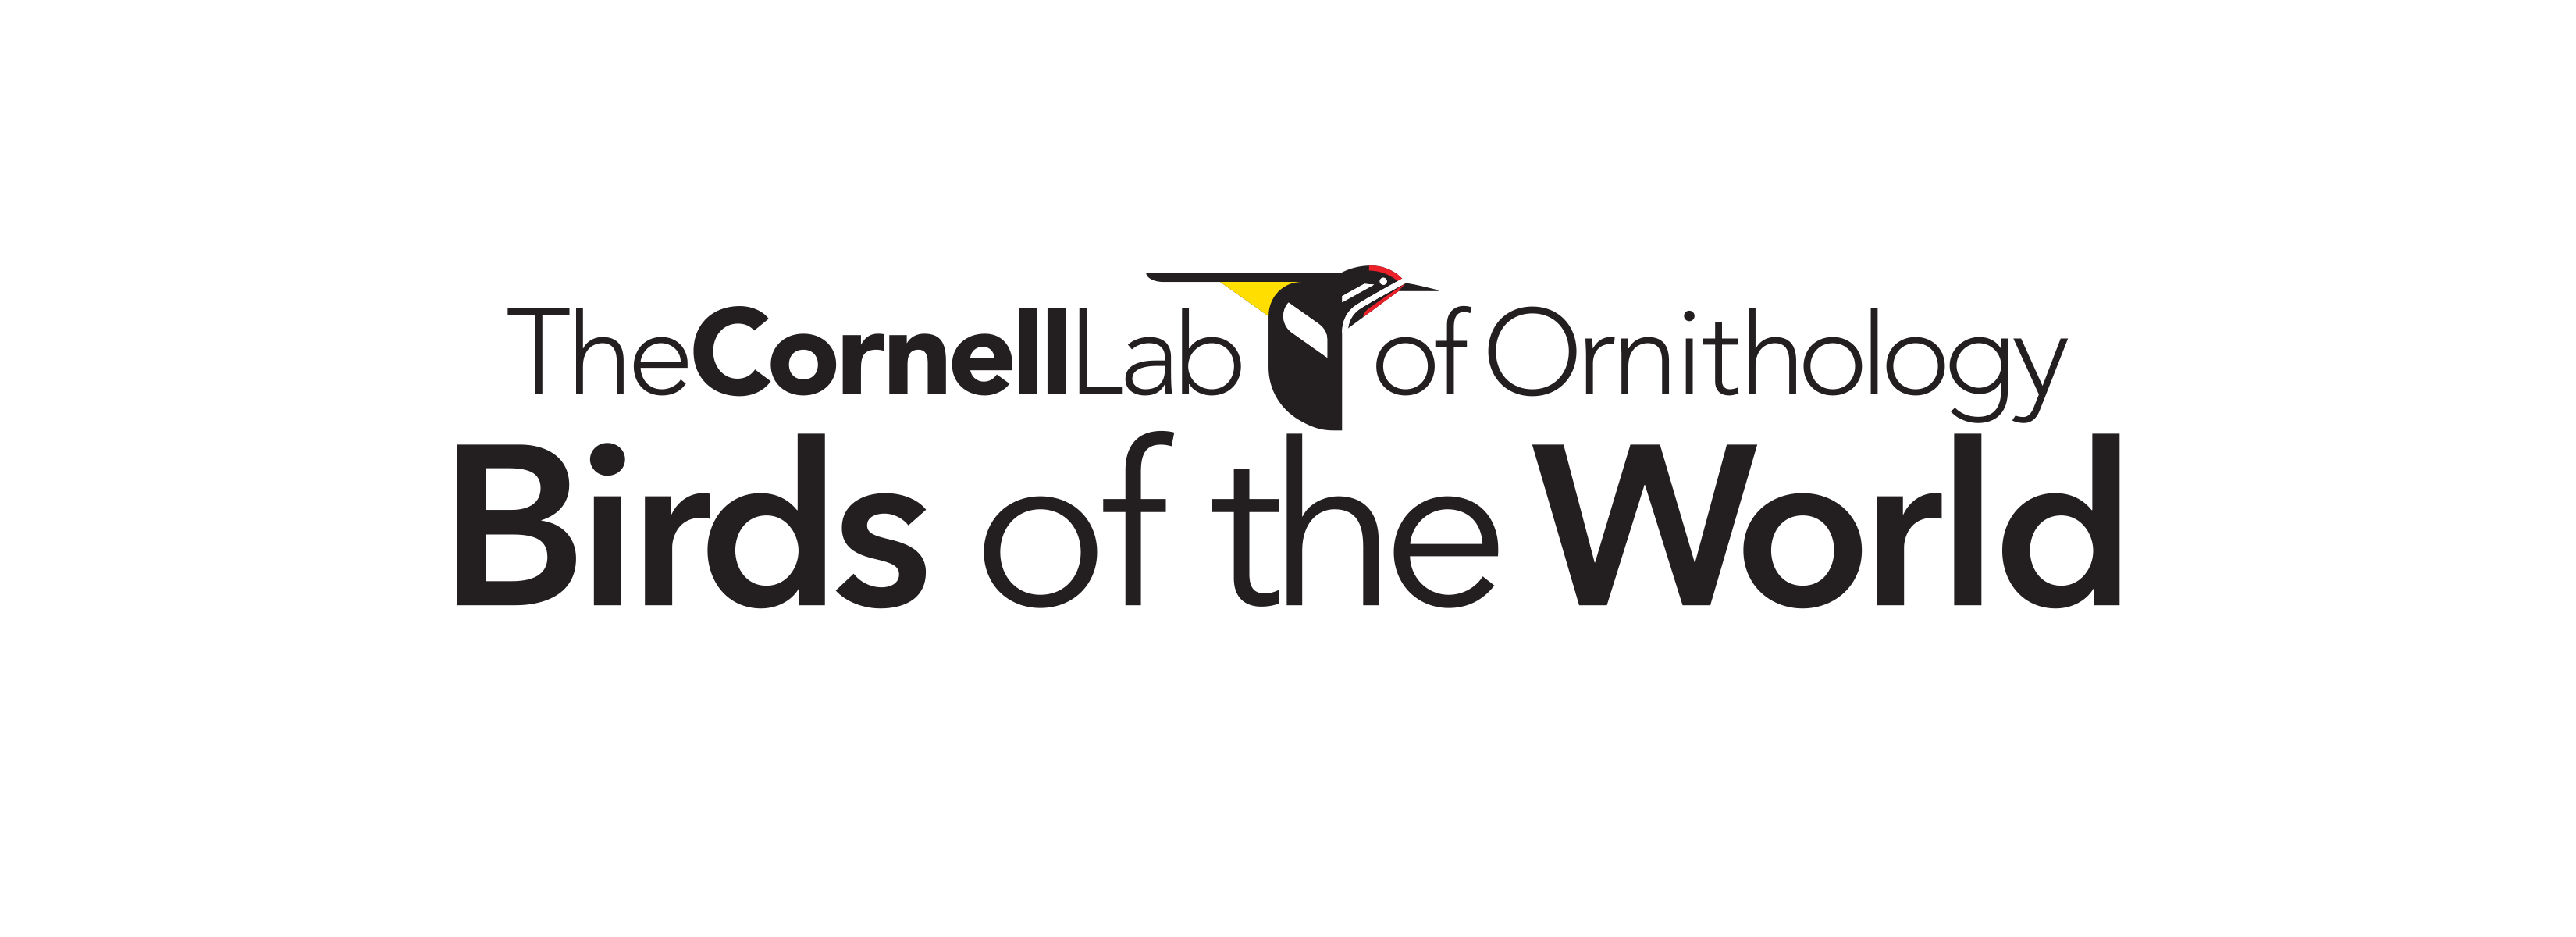 The Cornell Lab of Ornithology Birds of the World database logo